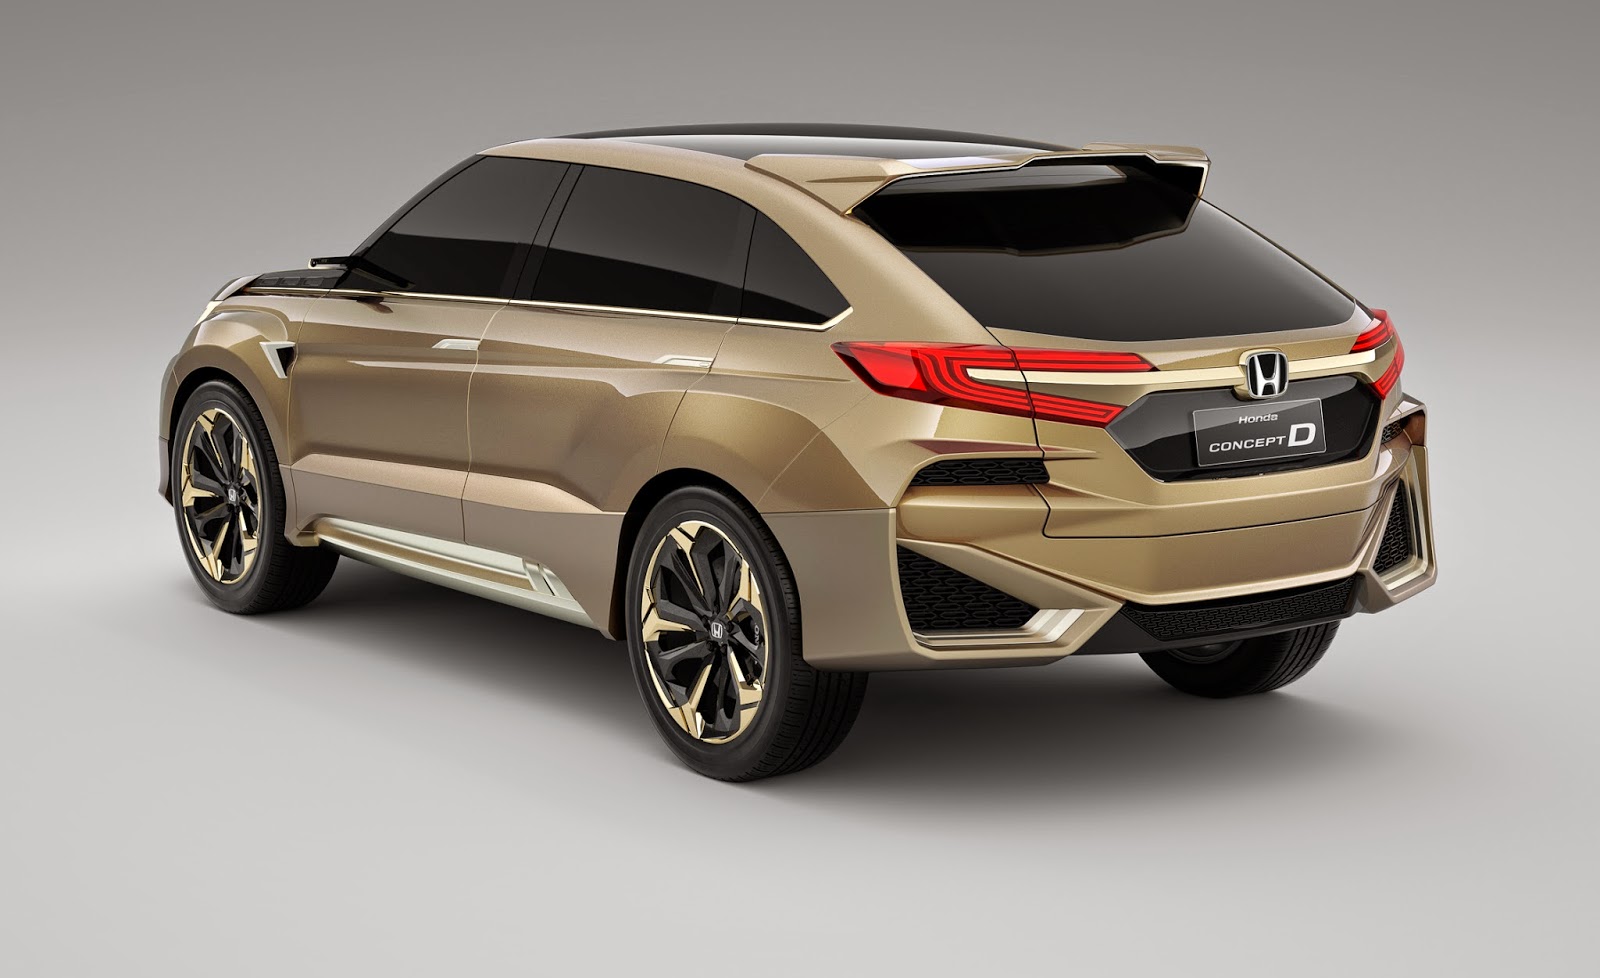  Mobil  Honda  Terbaru  Concept D Memulai Debutnya di China 